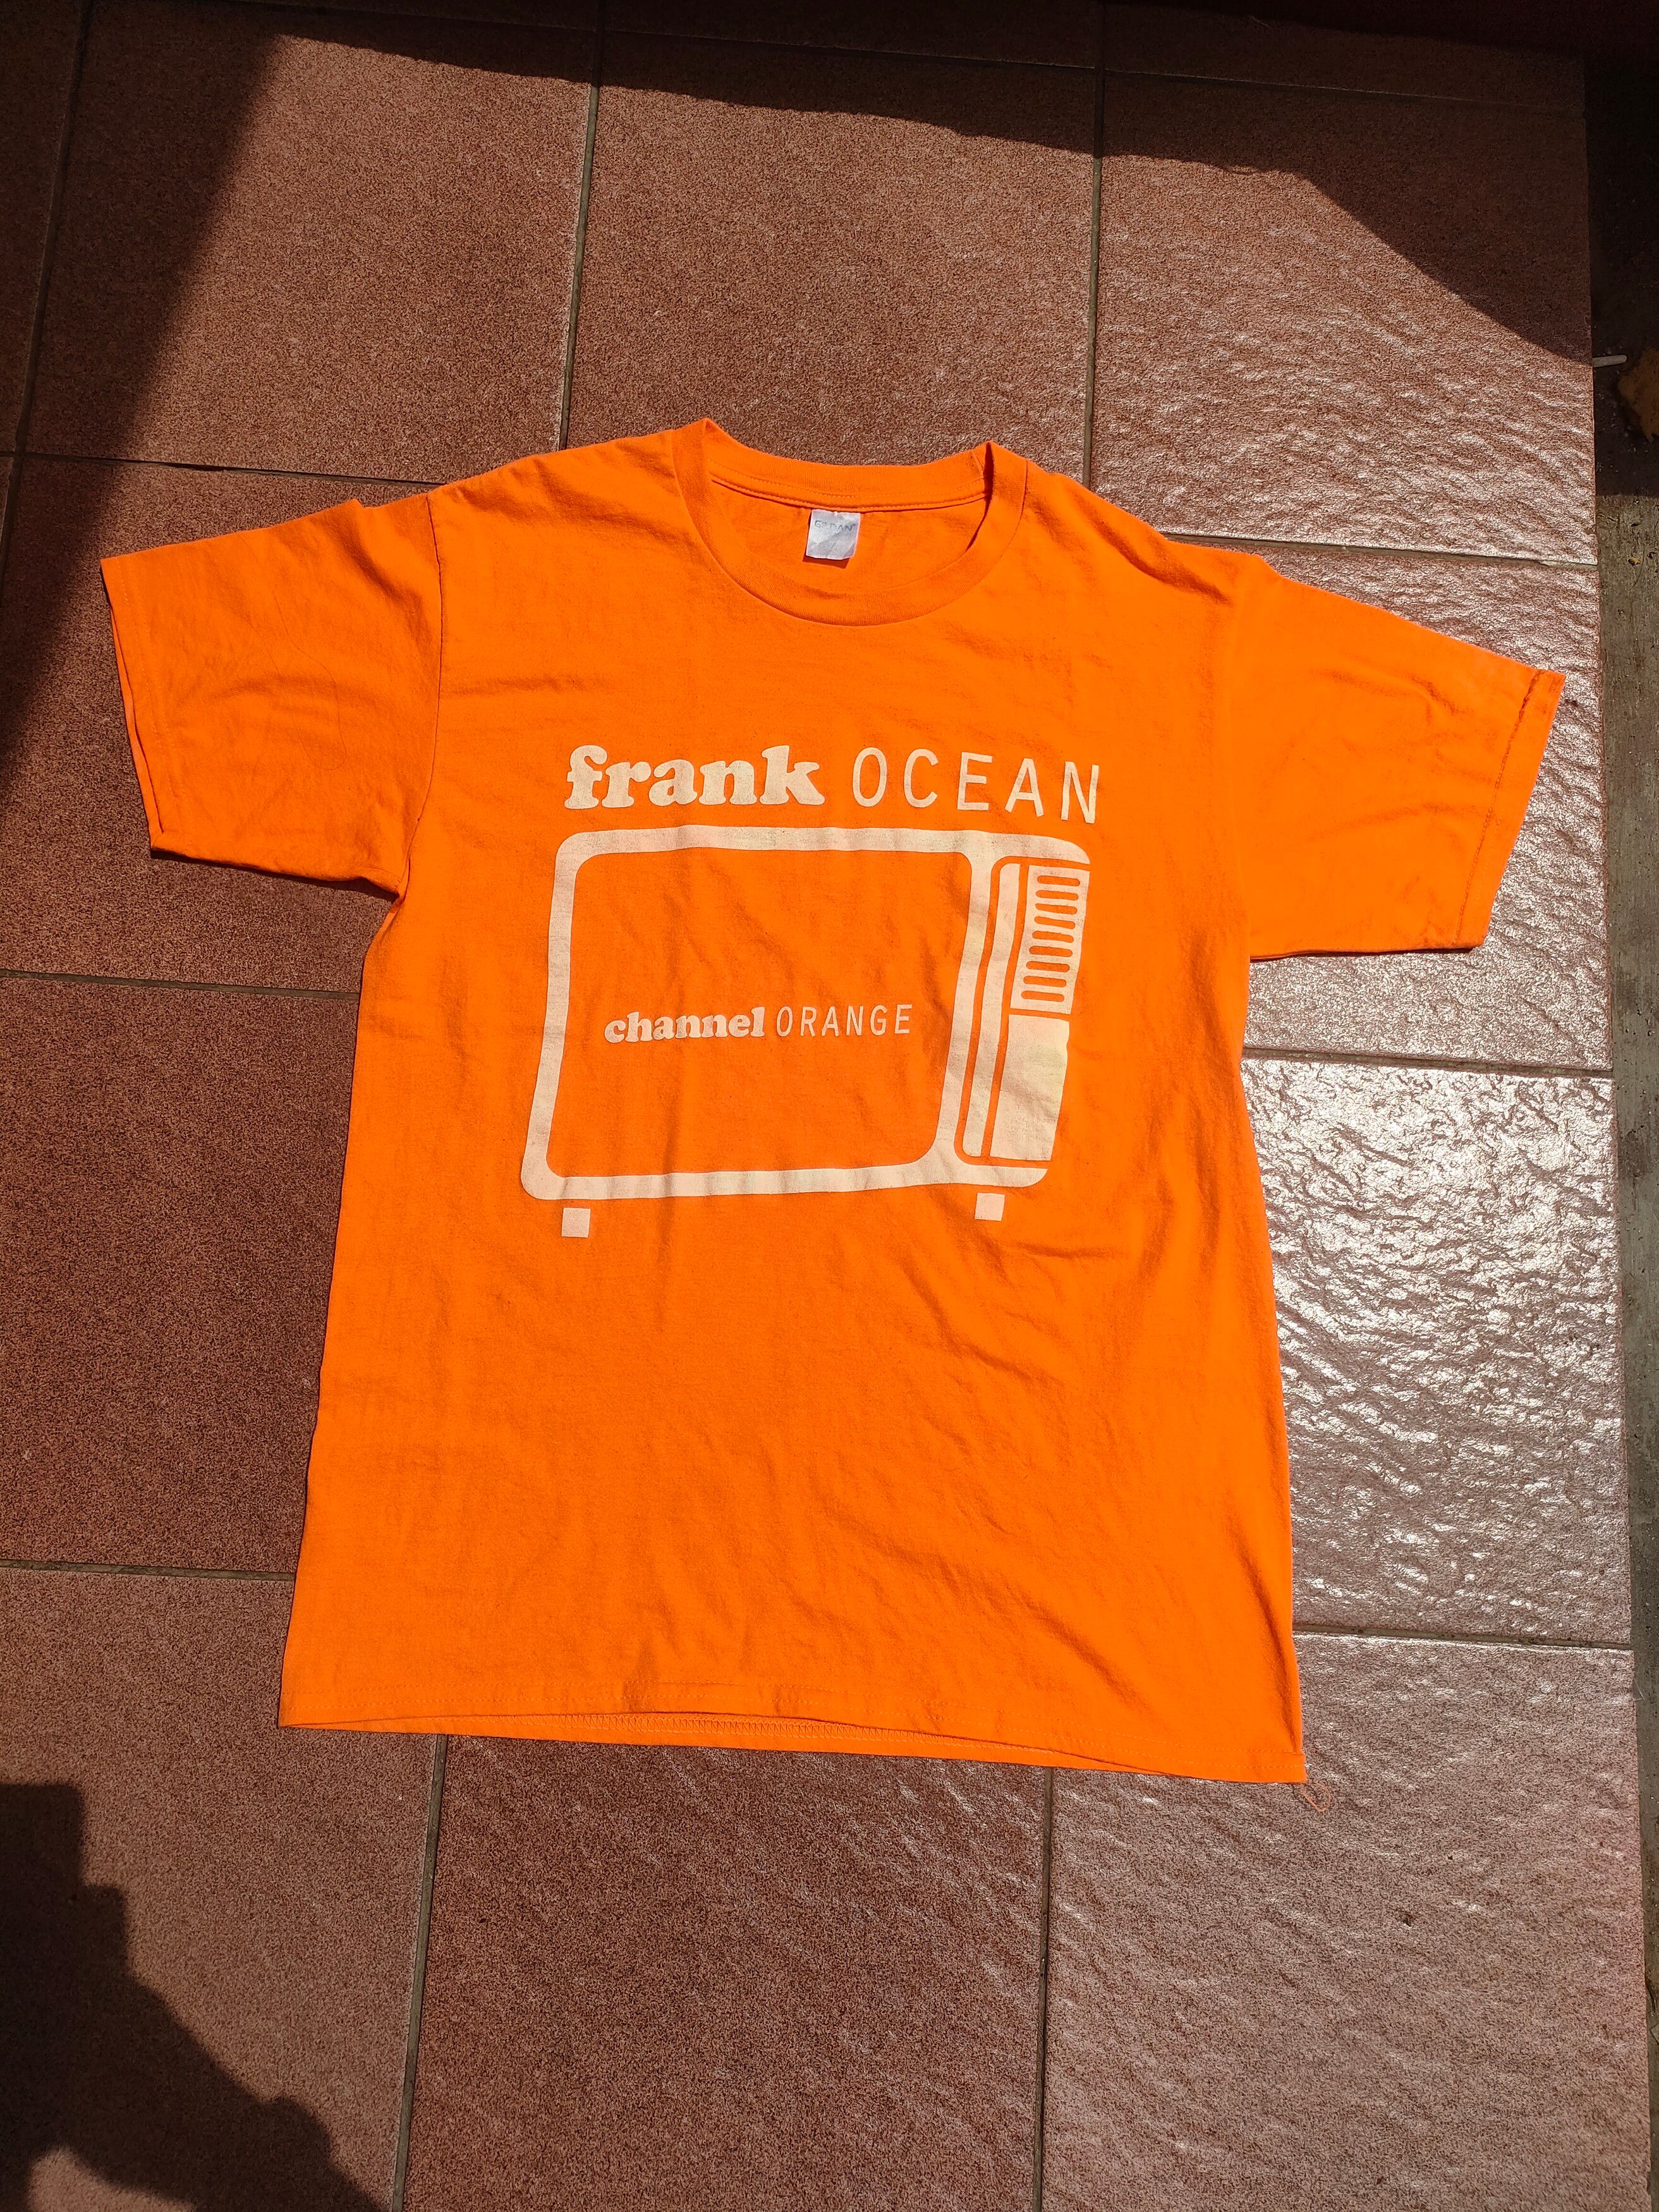 Vintage - Frank Ocean - Channel Orange - Def Jam Recordings - 3